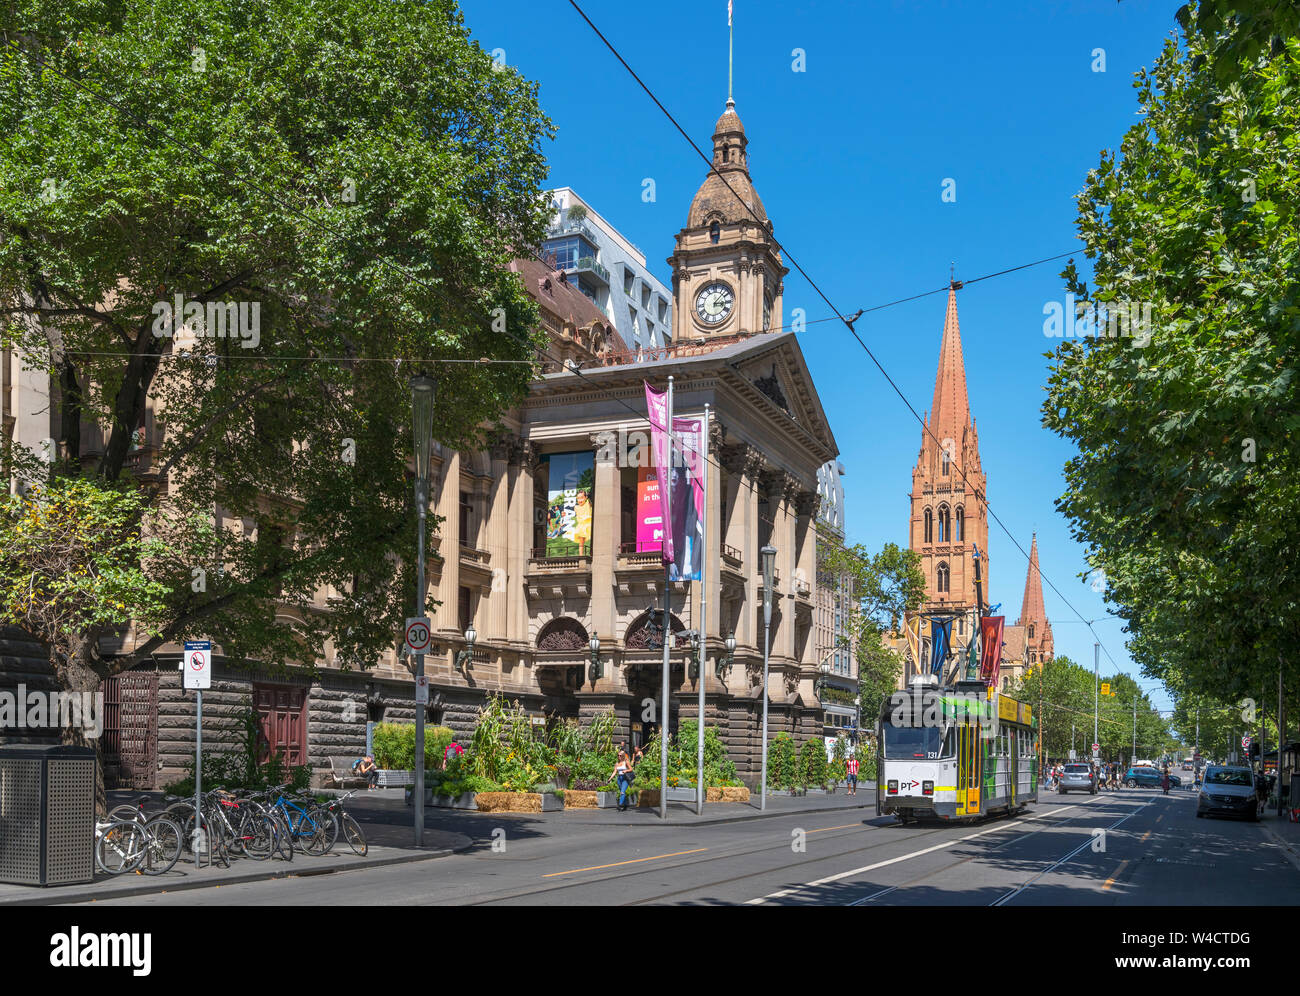 Mit der Straßenbahn vor der Melbourne Town Hall auf die Swanston Street mit Blick auf die St Paul's Kathedrale, Melbourne, Victoria, Australien Stockfoto